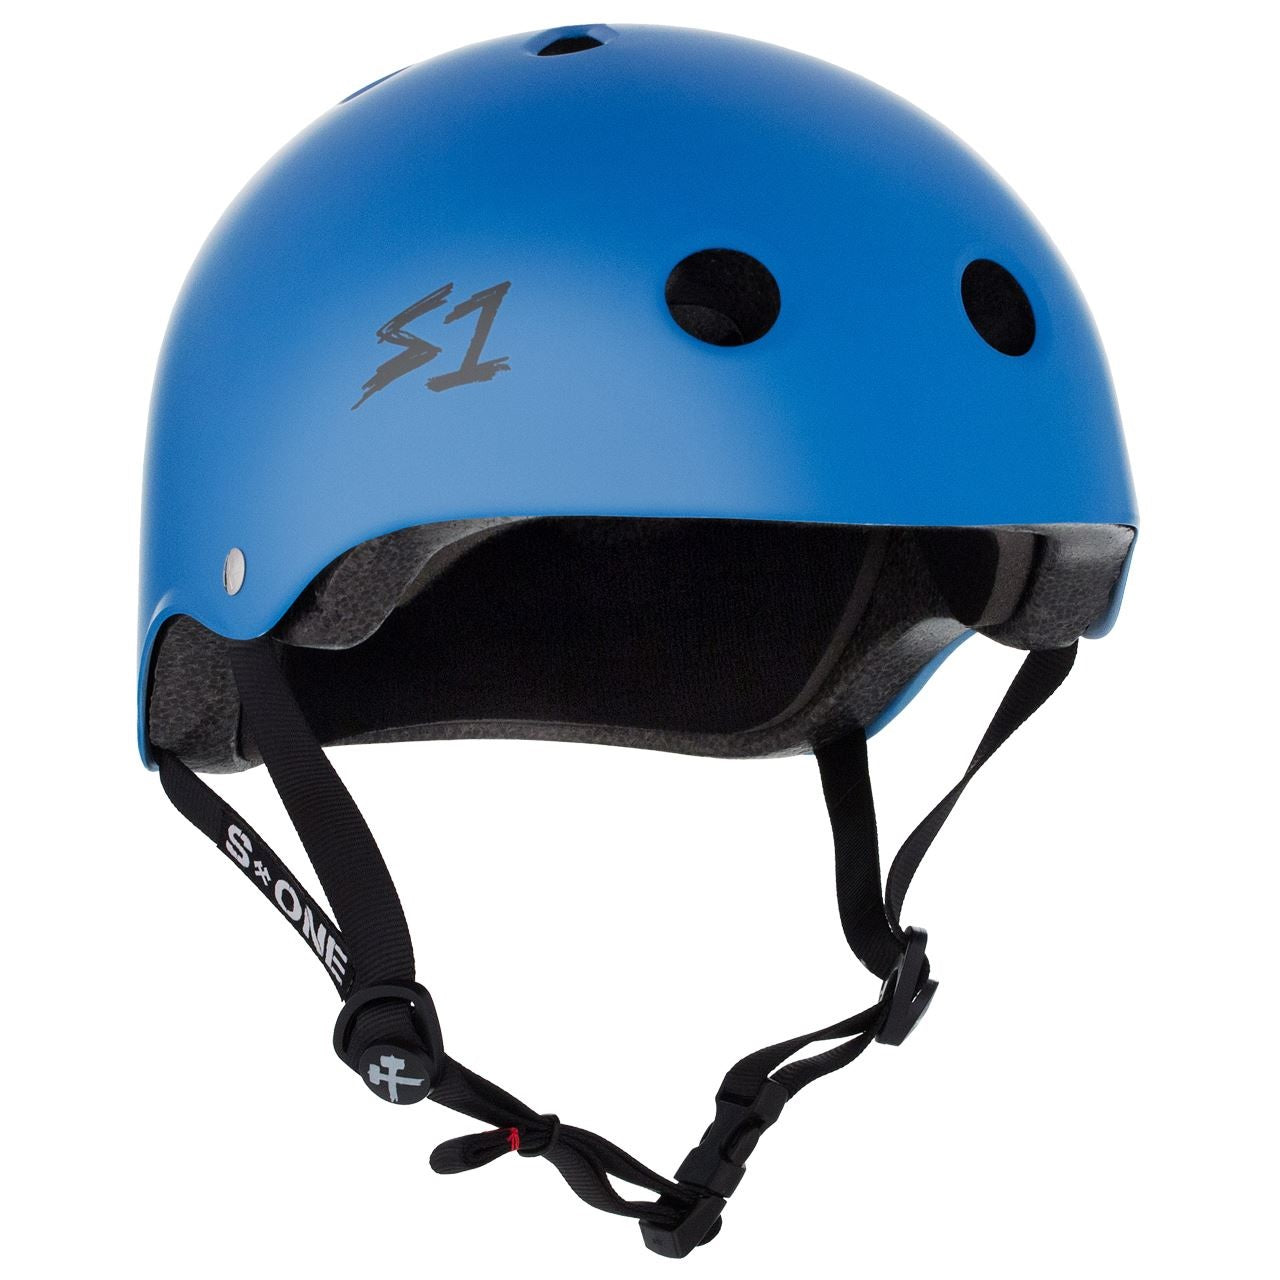 S1 Lifer Helmet - Cyan Matt